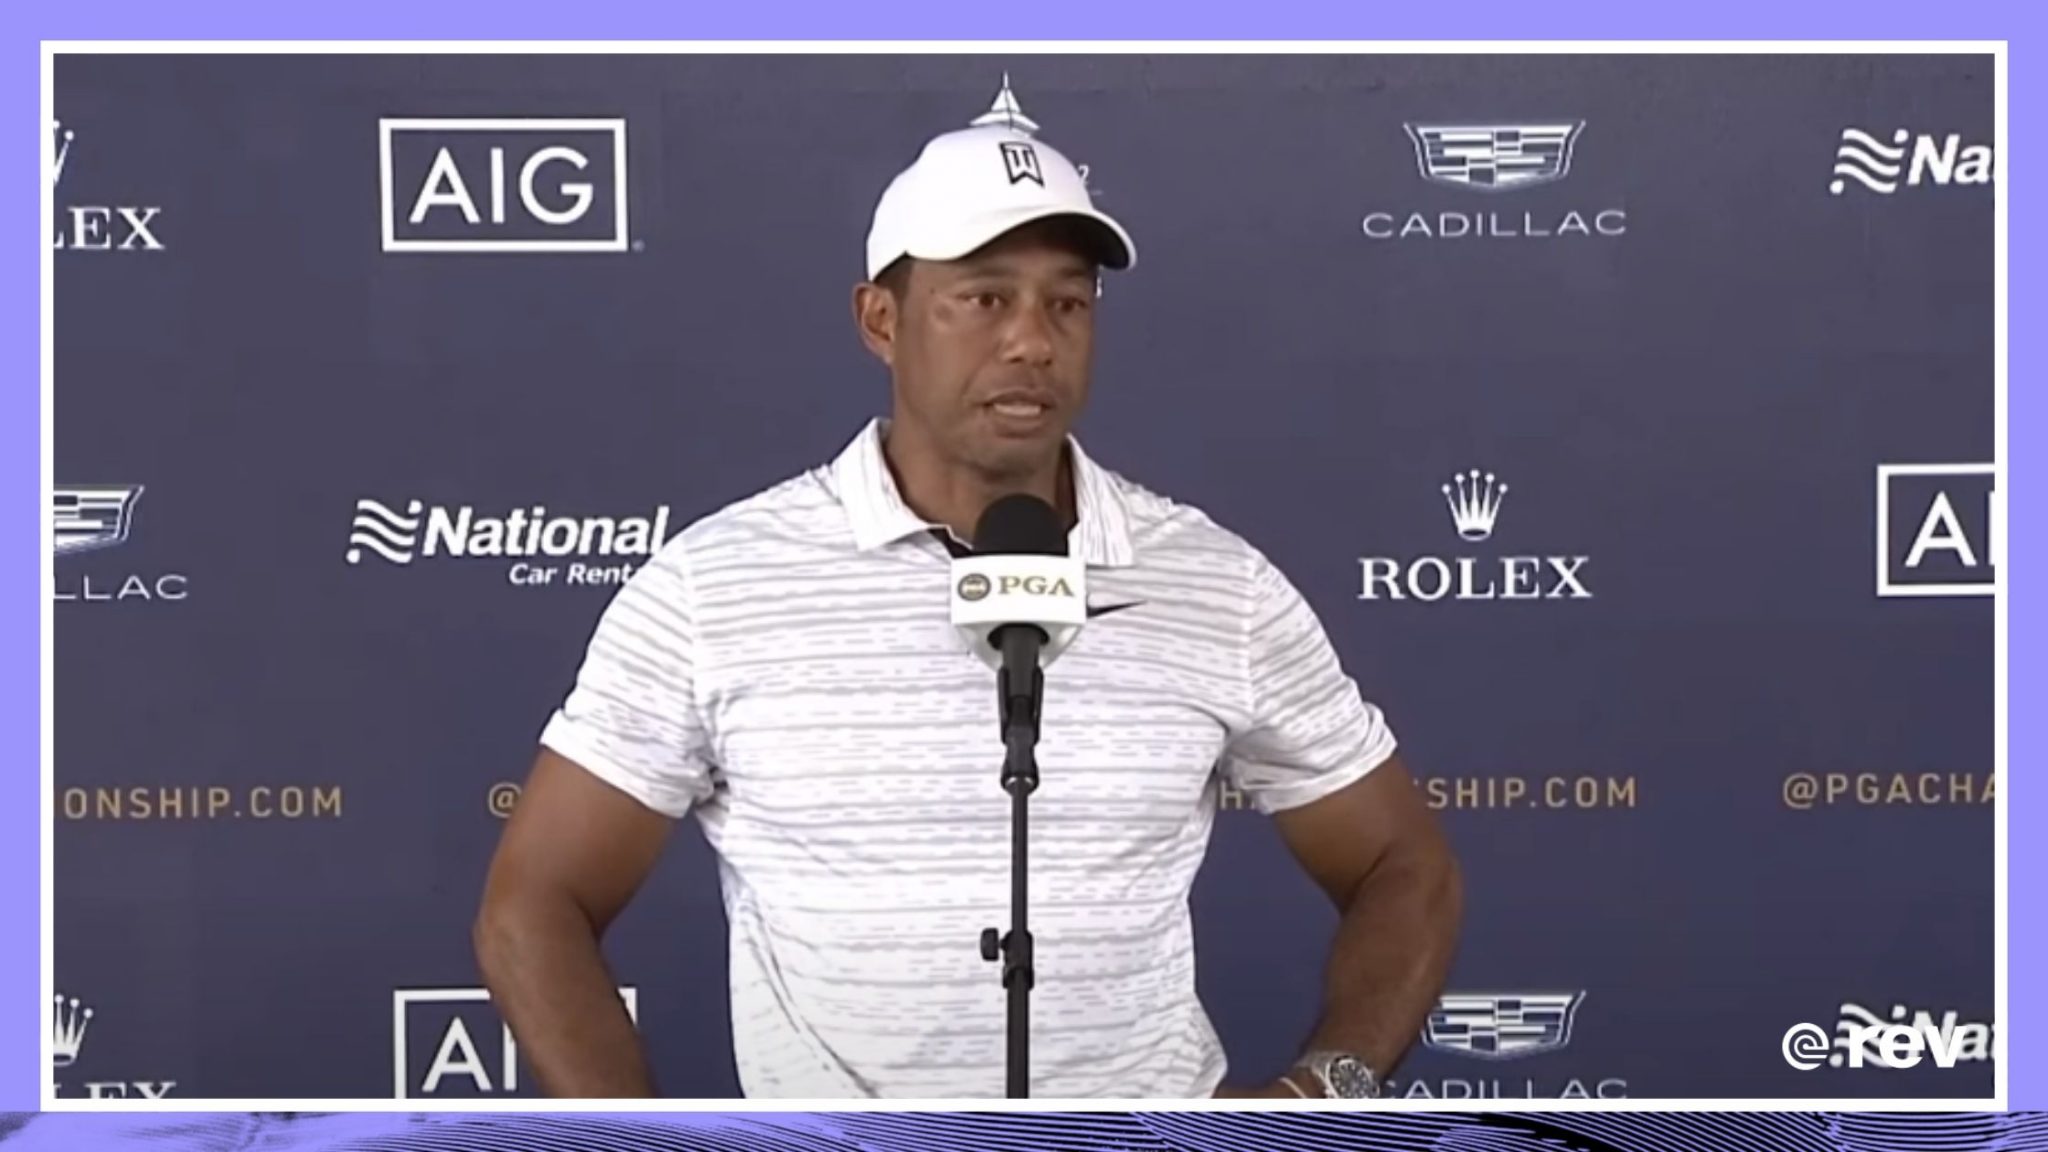 Tiger Woods Pga Press Conference 2022 Transcripts